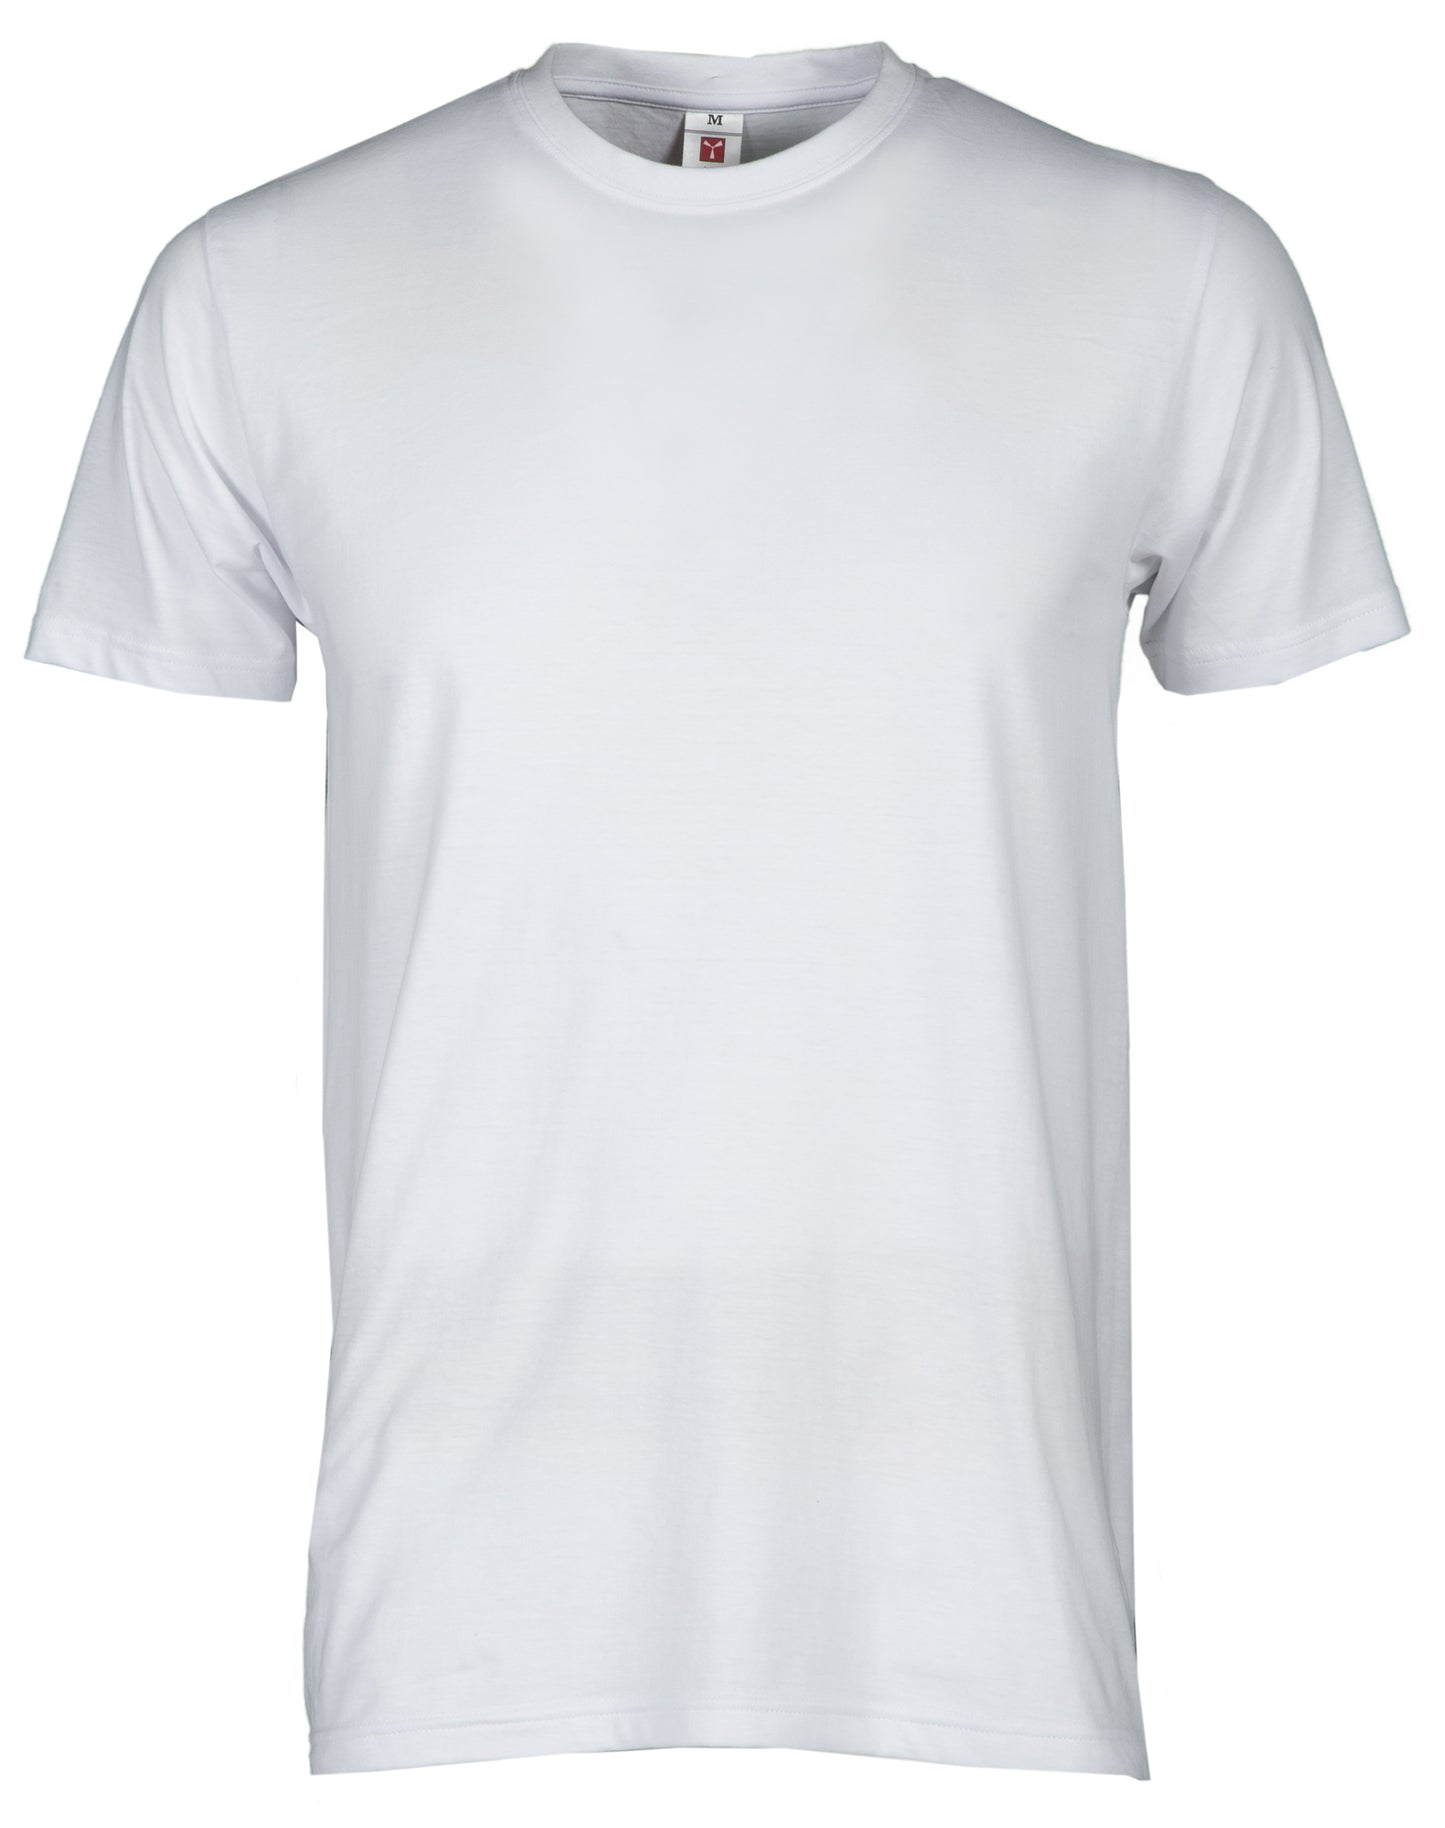 PRINT - T-Shirt - 150g